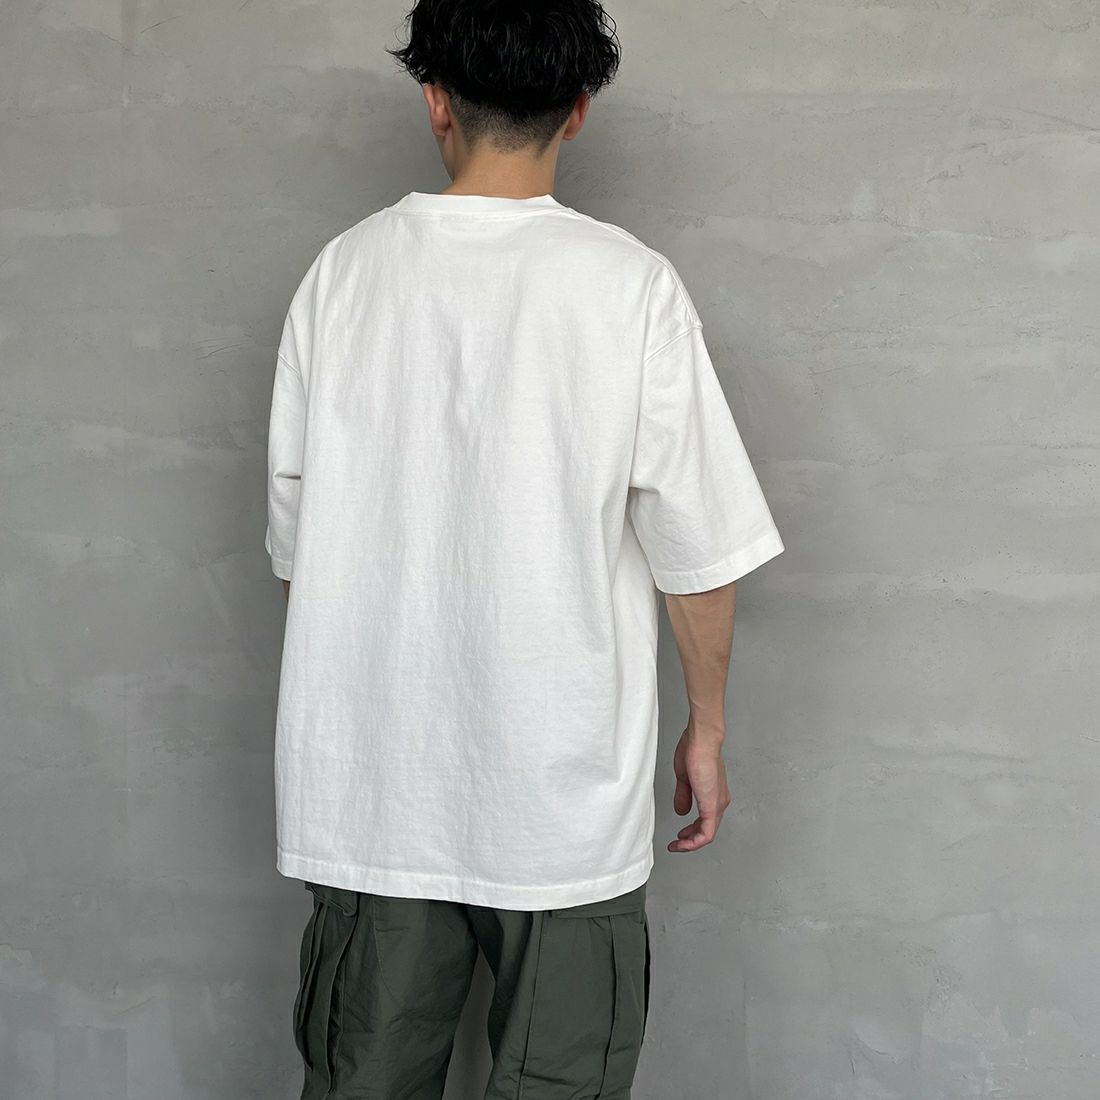 CHUMS [チャムス] ヘビーウエイトチャムスロゴTシャツ [CH01-2271] W001 WHITE &&モデル身長：168cm 着用サイズ：XL&&